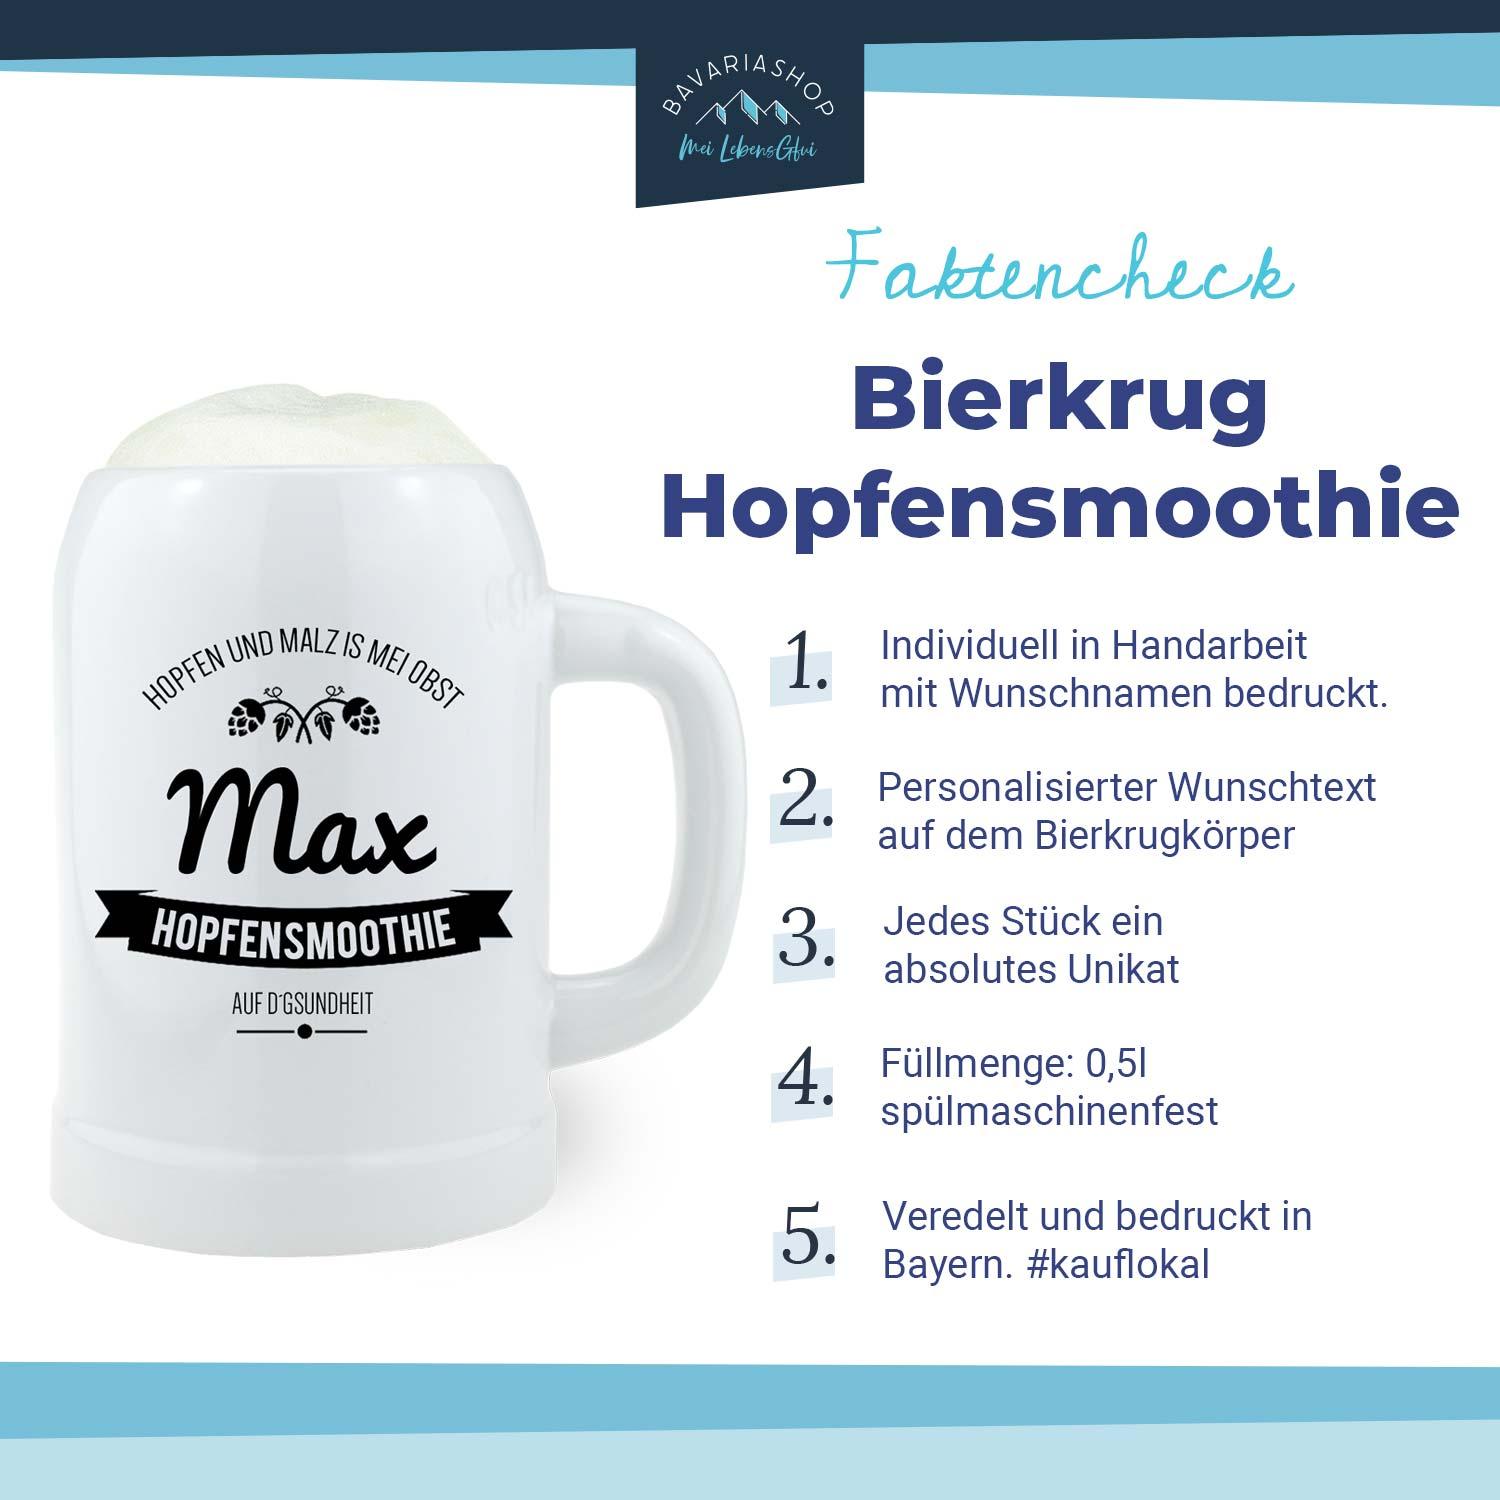 Bierkrug "Hopfensmoothie" mit Wunschname - bavariashop - mei LebensGfui